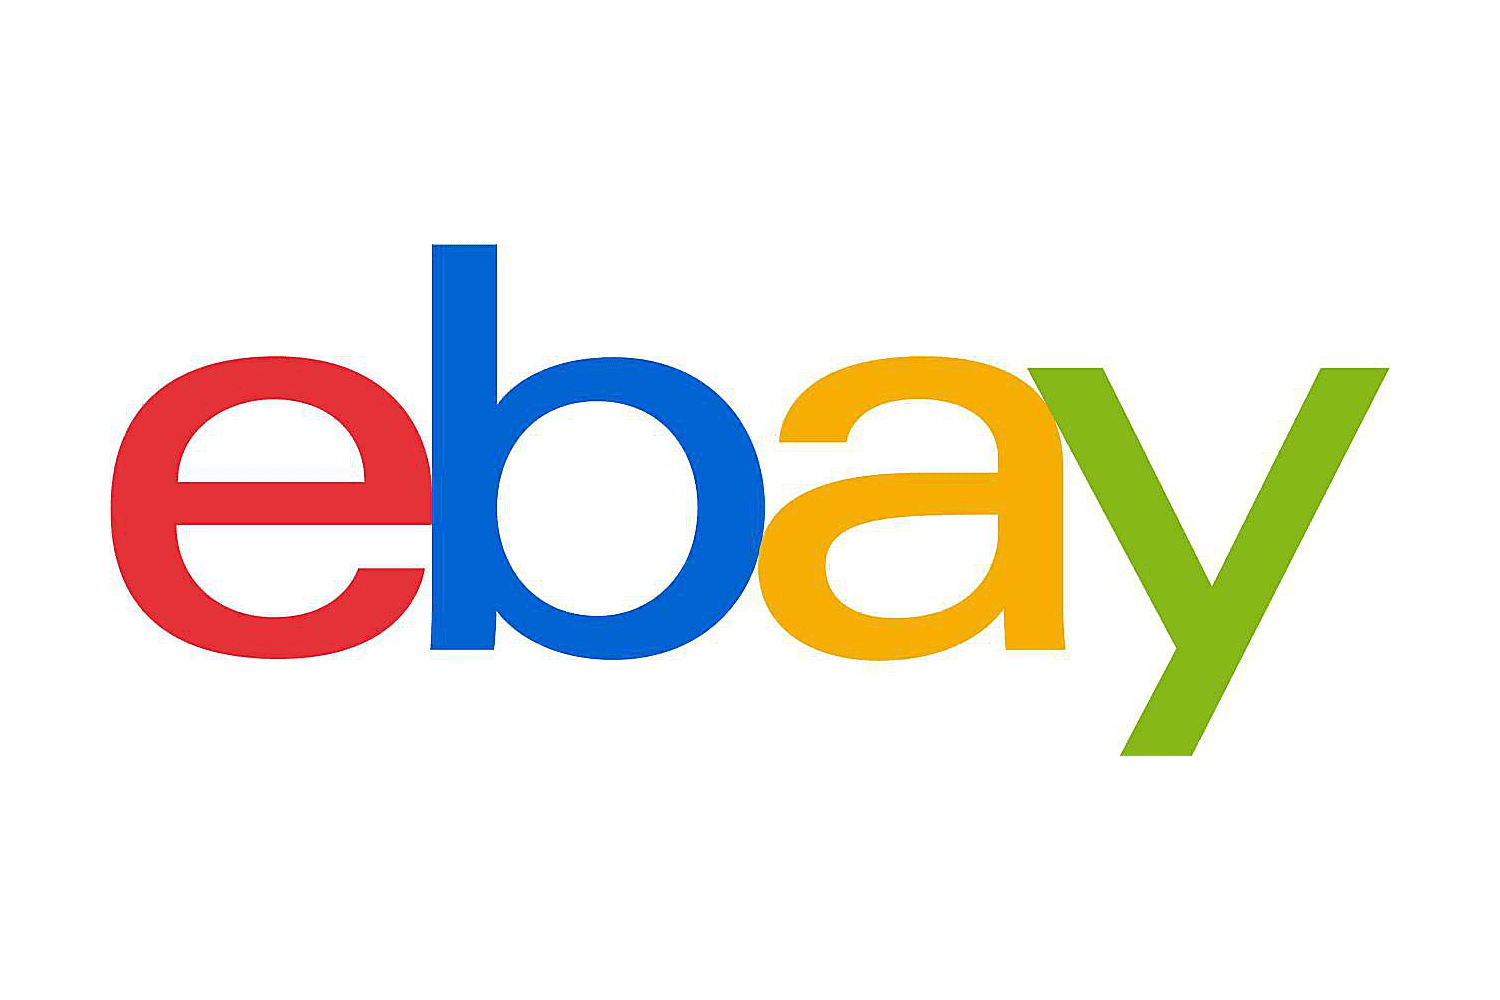 Logotipo de eBay desde octubre de 2012